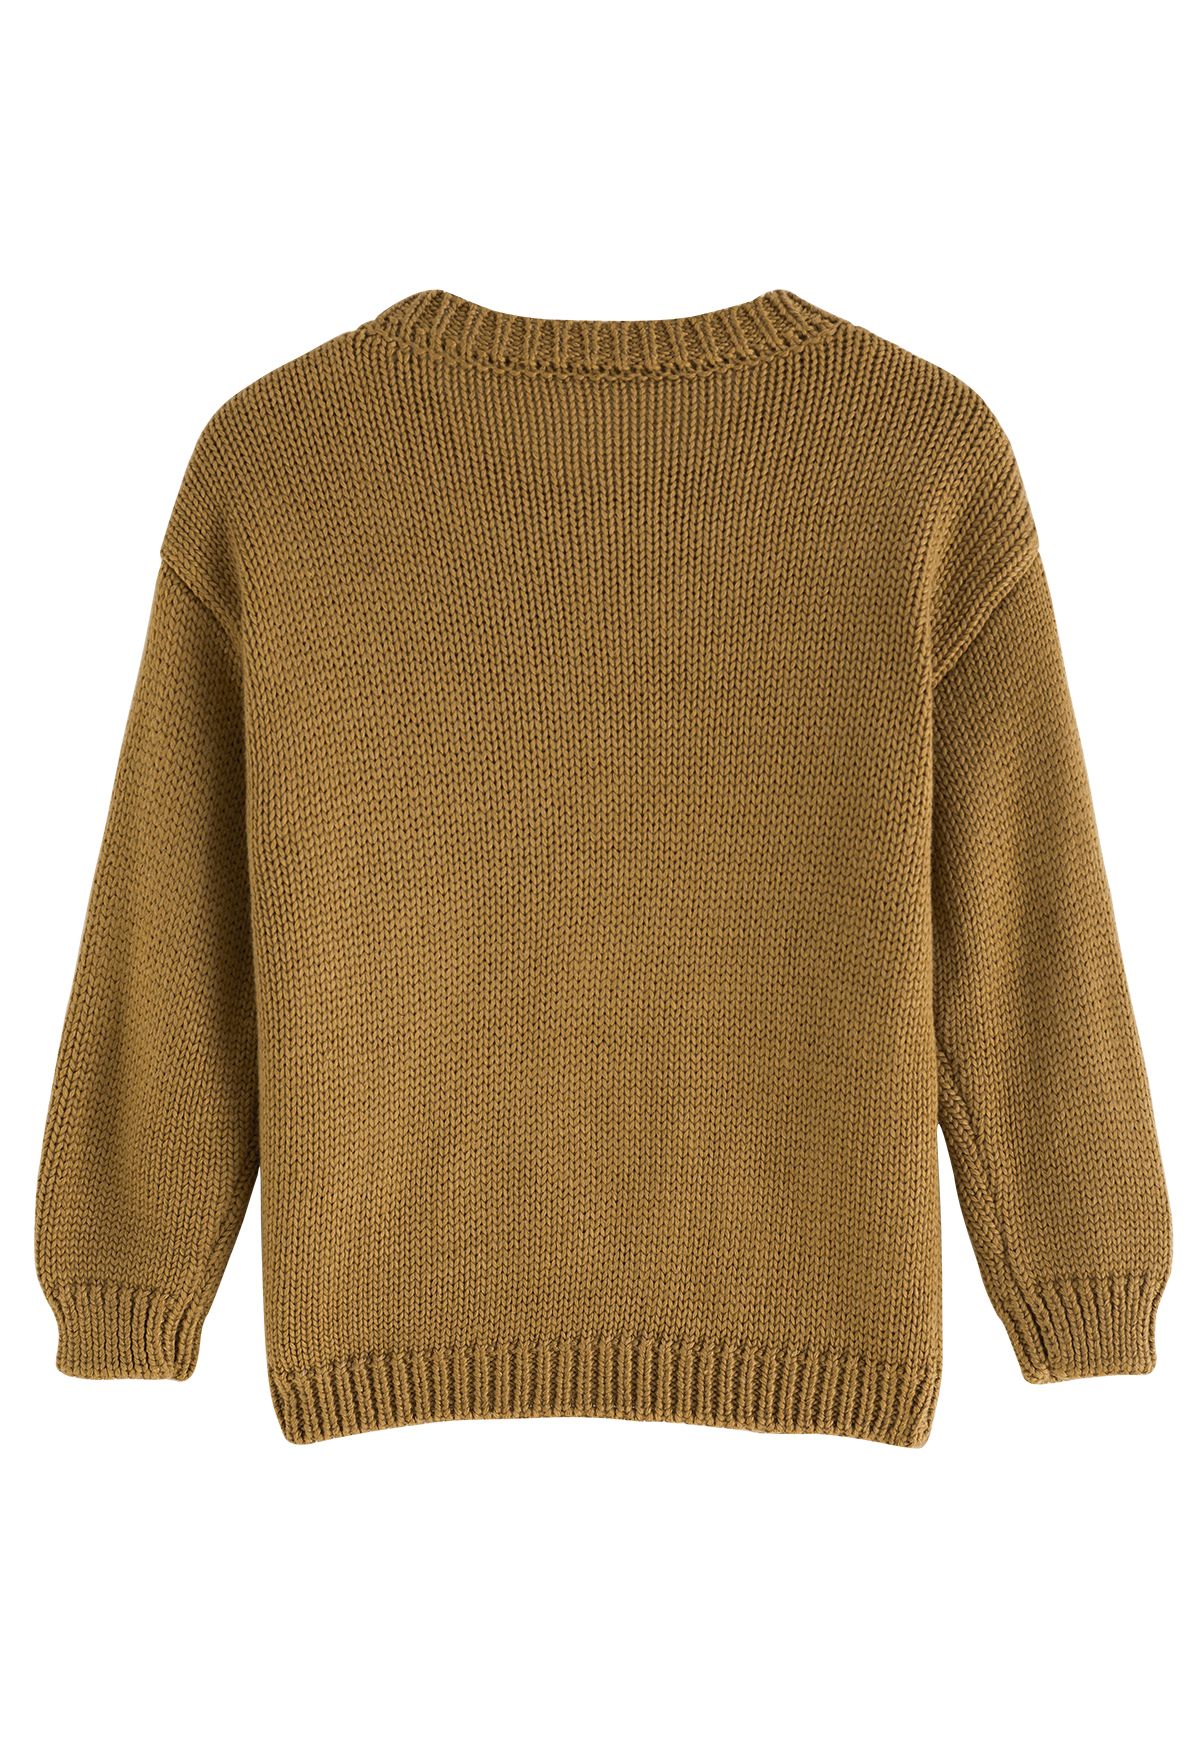 Pom-Pom Hand-Knit Sweater in Caramel For Kids